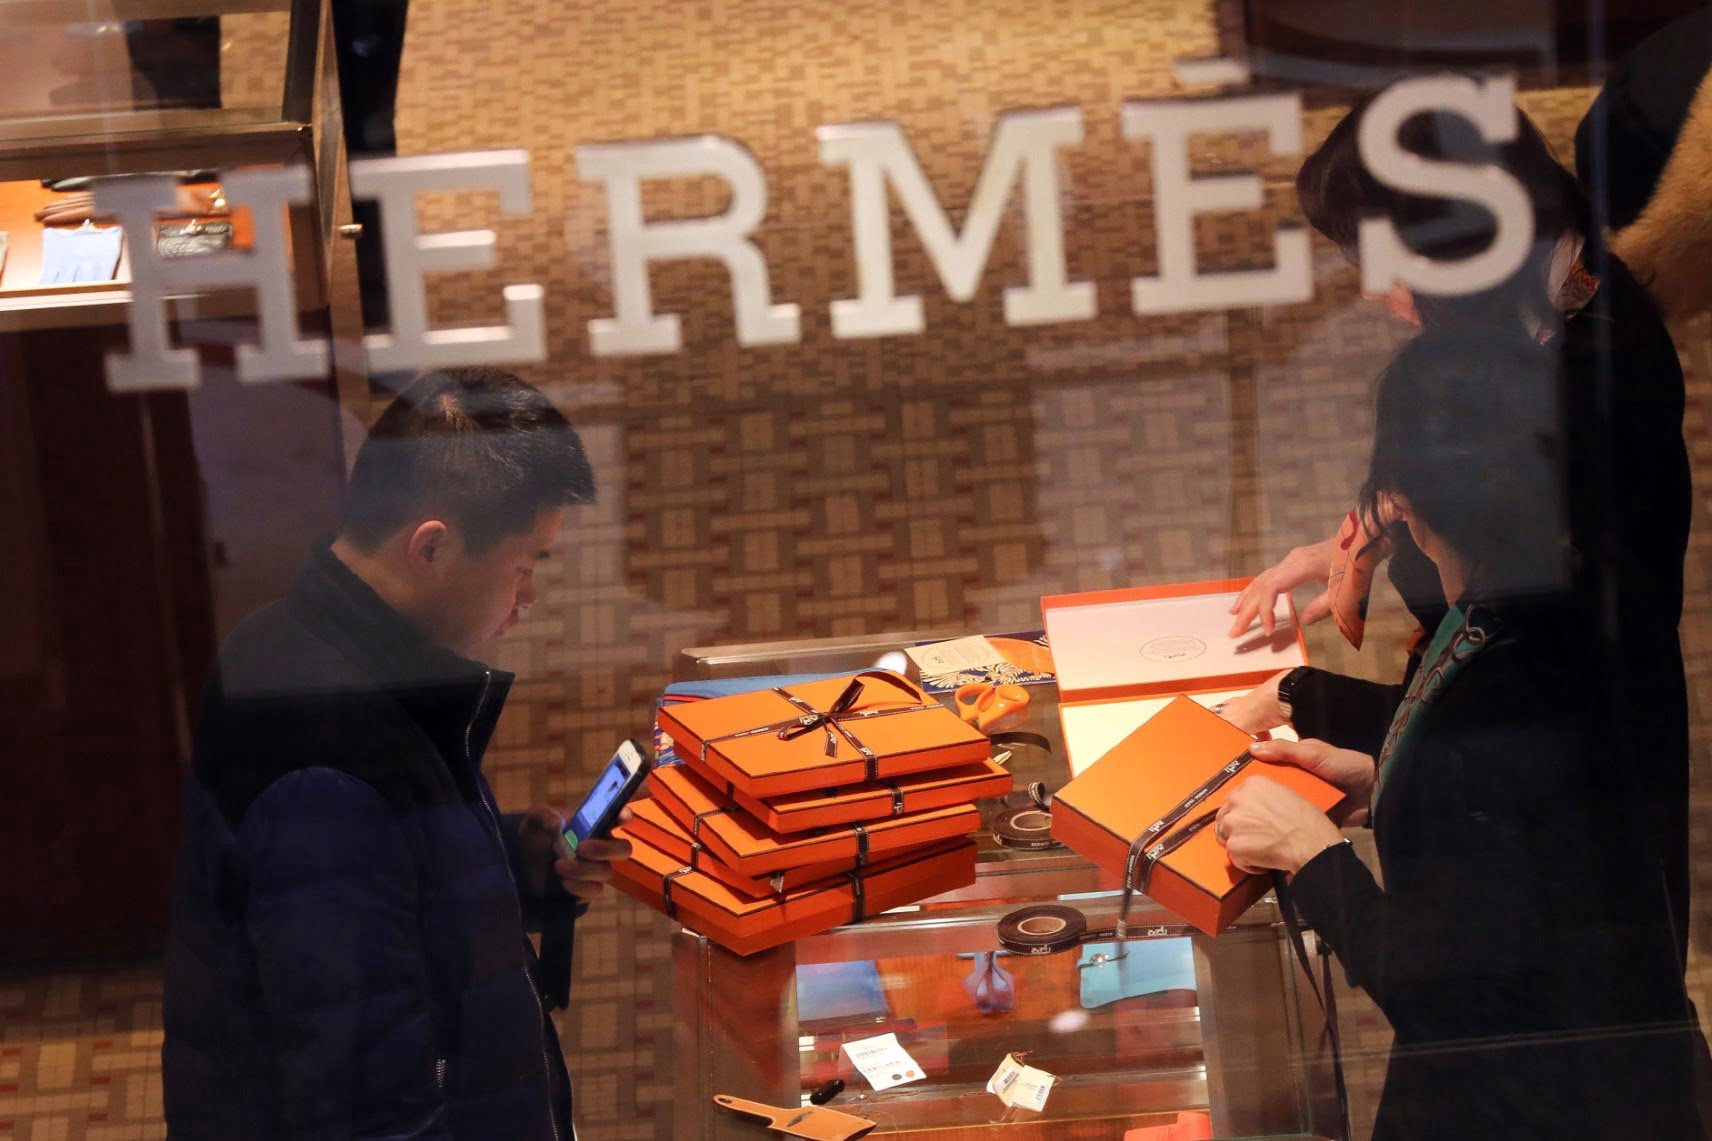 Hermès sắp soán ngôi Louis Vuitton, trở thành hãng xa xỉ nhất